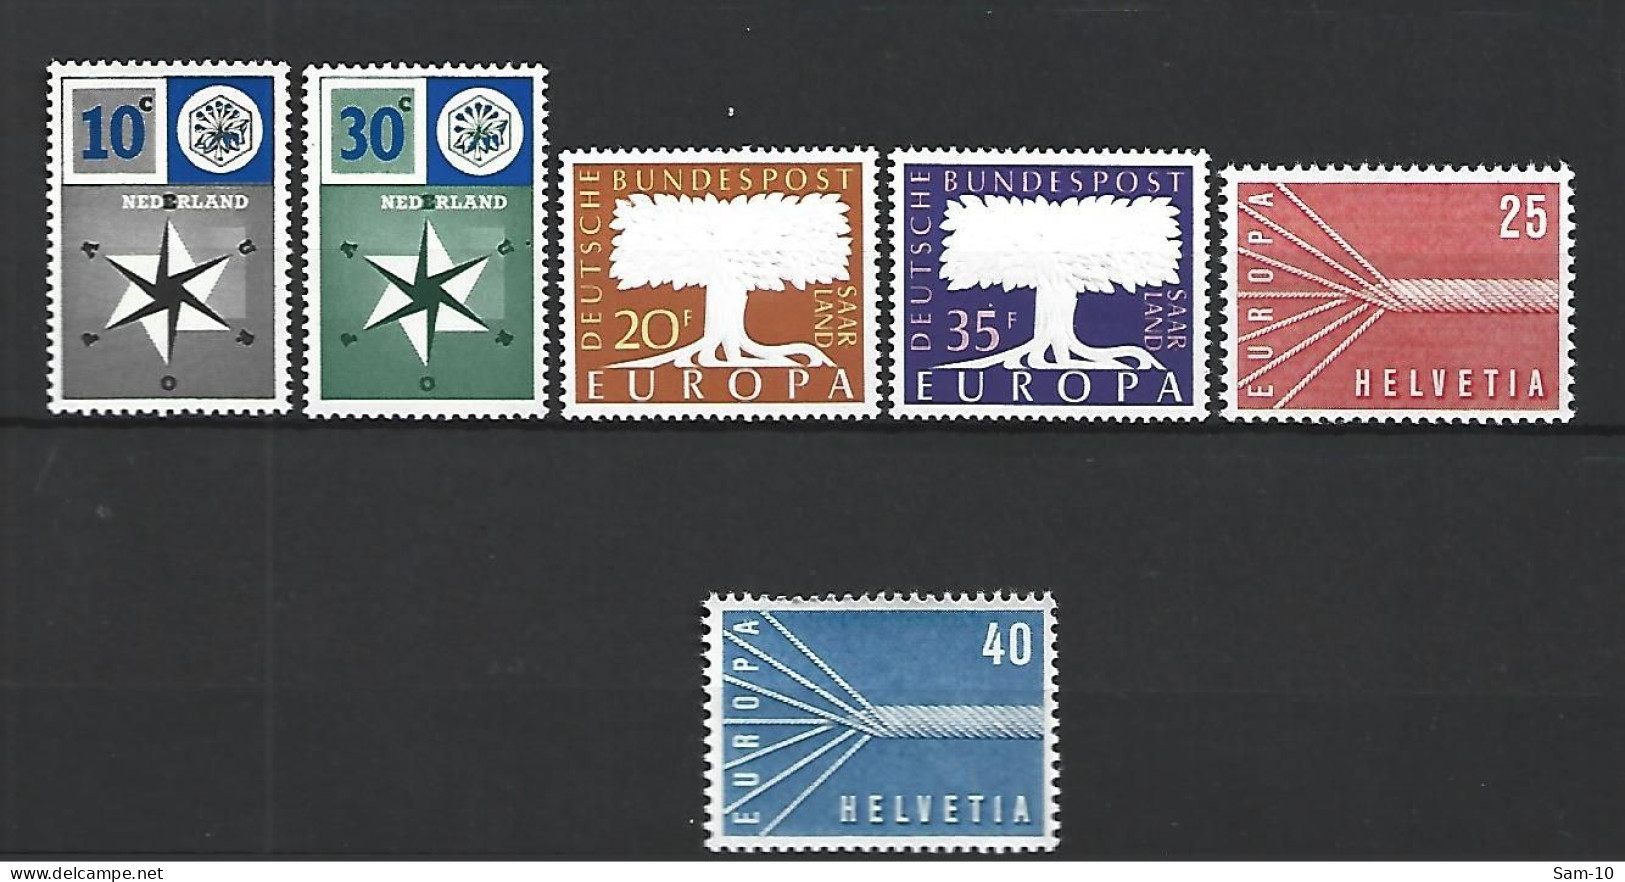 Timbre 1957 Europa Pays Bas Sarre Suisse Neuf ** N 678/679 N 384/385 N 595/596 - 1957